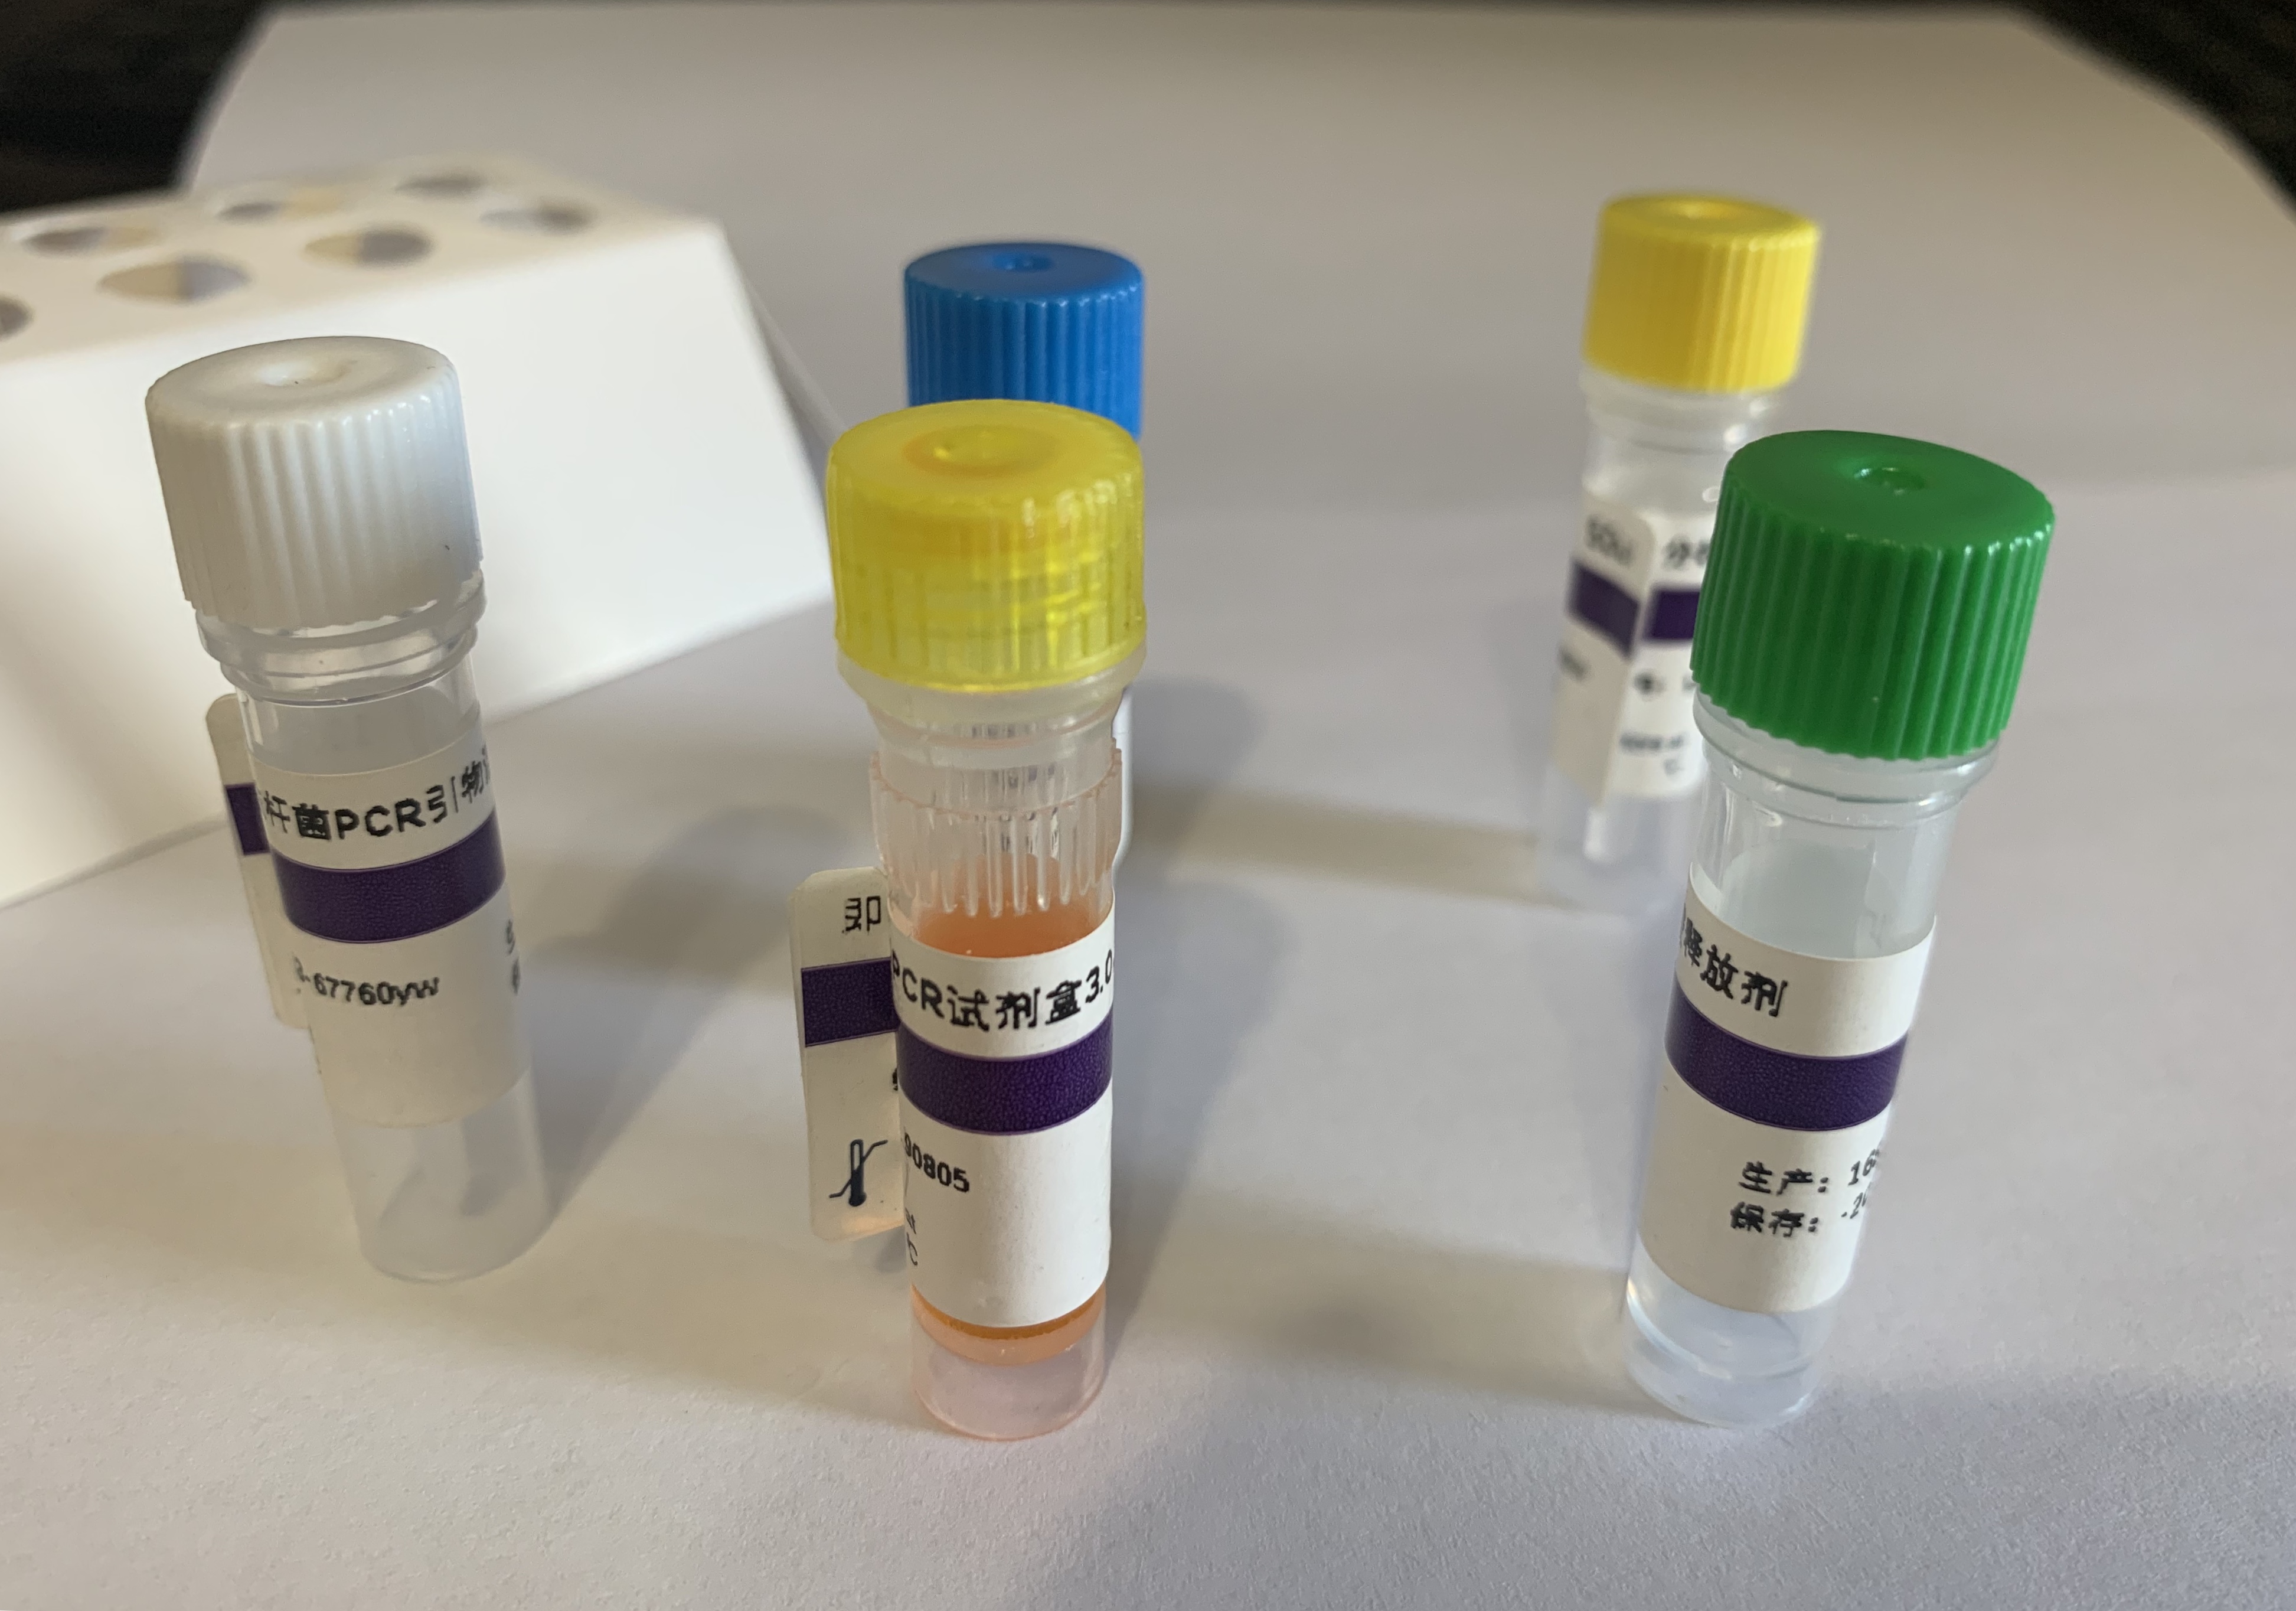 姜黄PCR鉴定试剂盒